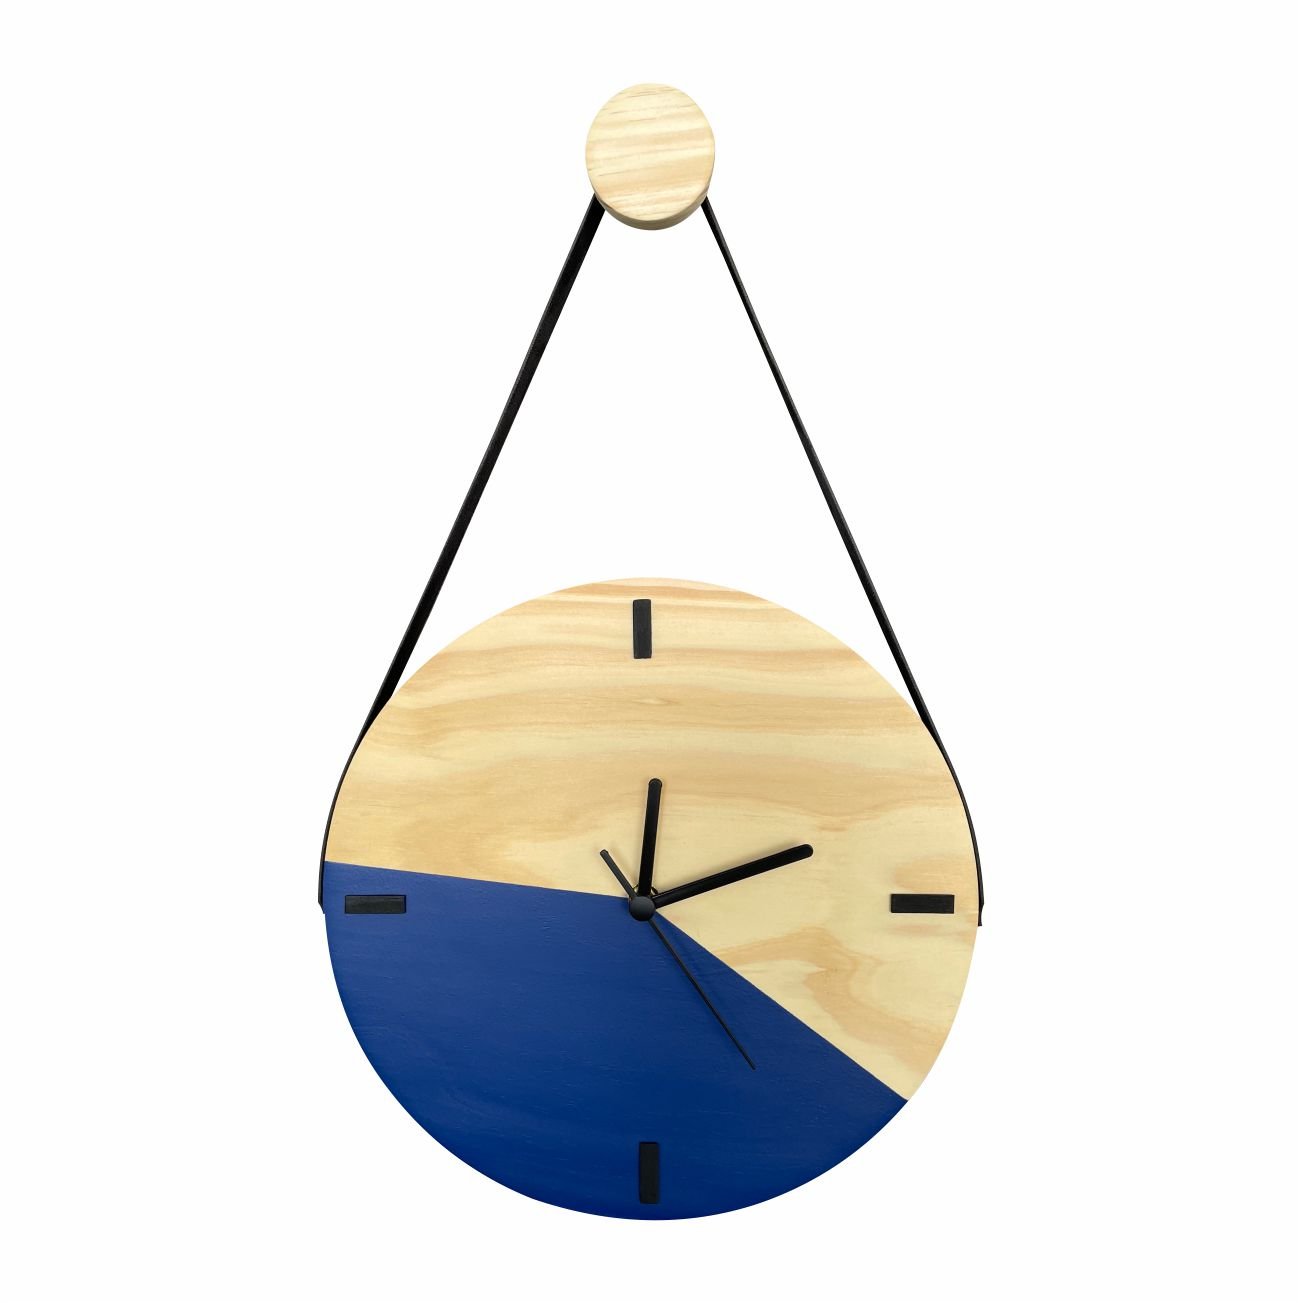 Relógio Decorativo Edward Clock Escandinavo Azul com Alça - 1